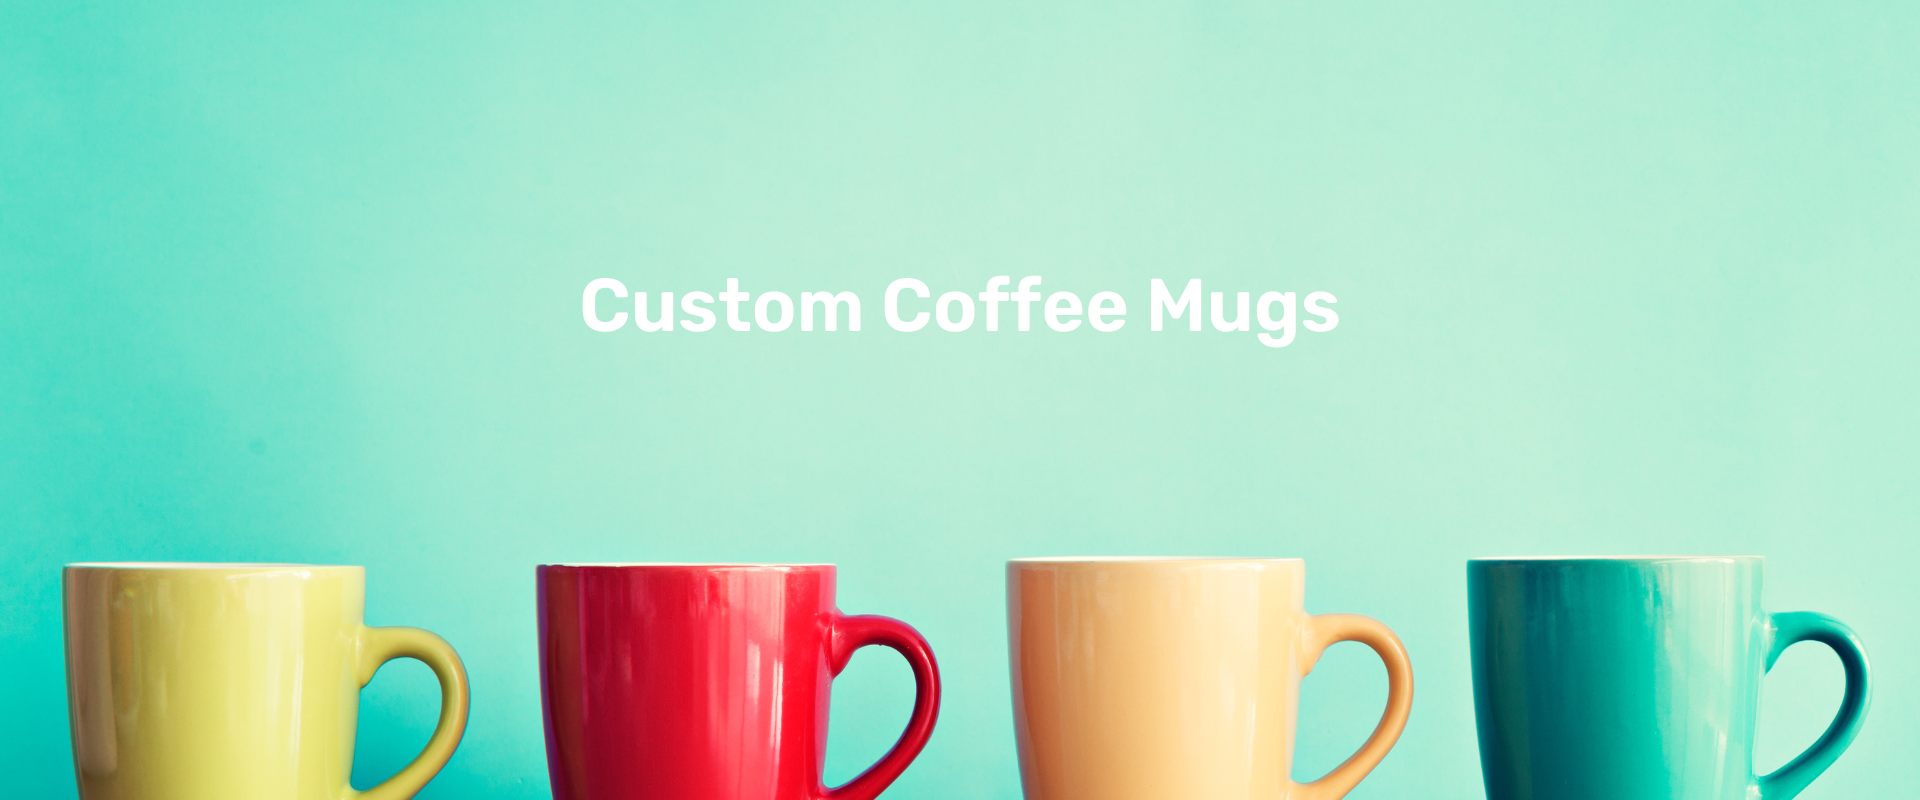 Custom Coffee Mugs – 10 Reason To Customise Coffee Mugs for Yourself